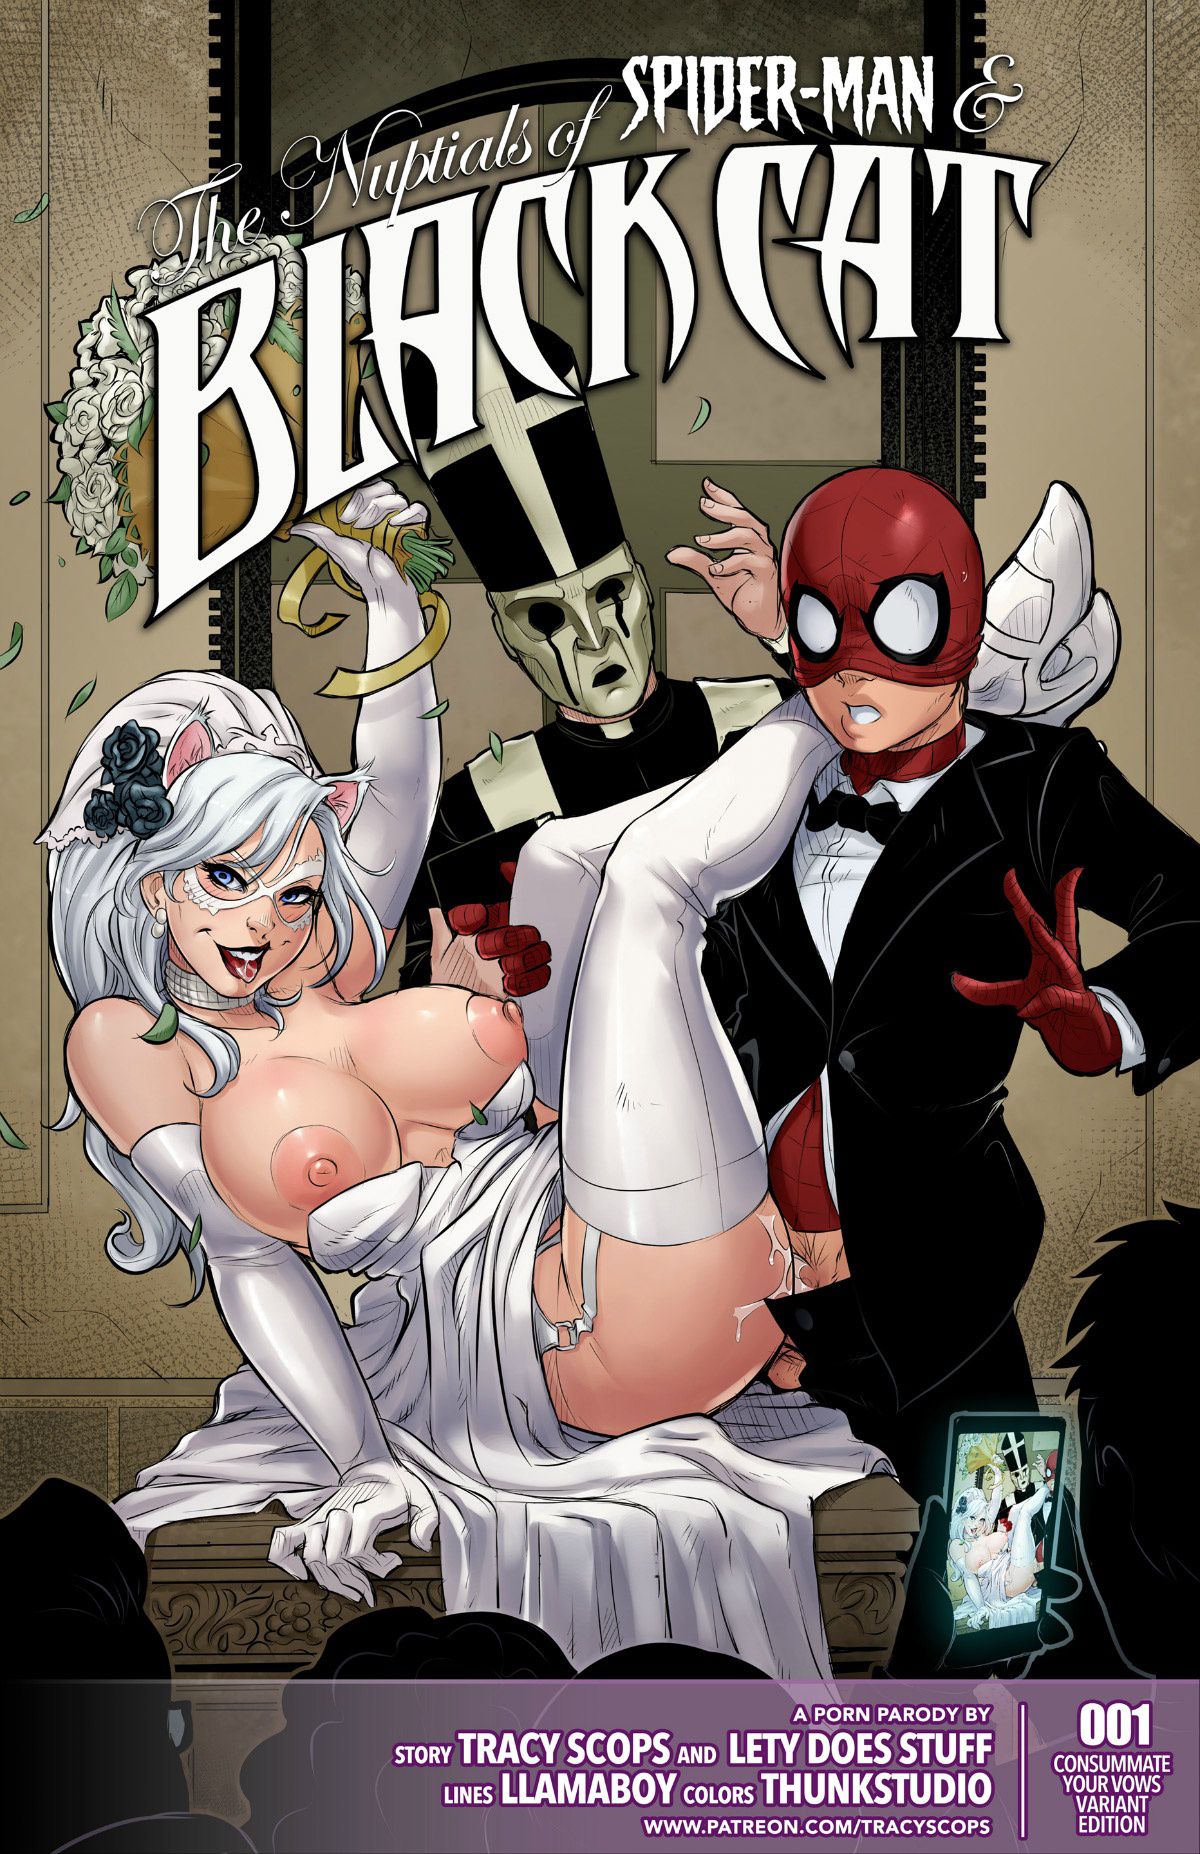 1200px x 1854px - The Nuptials of Spider-Man & Black Cat- LLamaboy - Porn Cartoon Comics